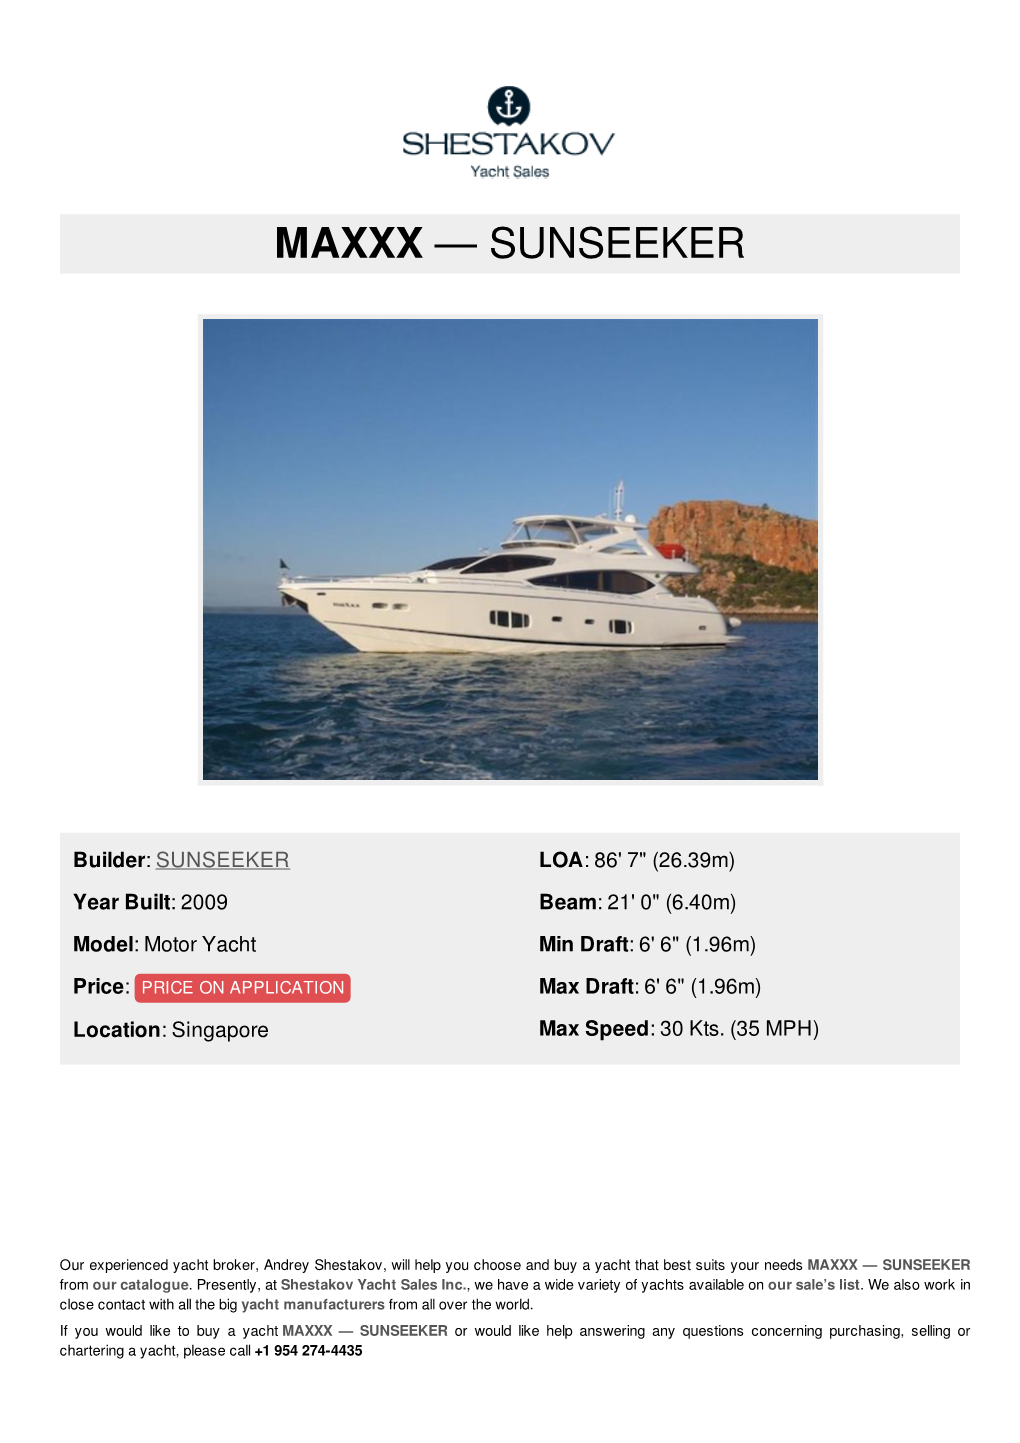 Maxxx — Sunseeker